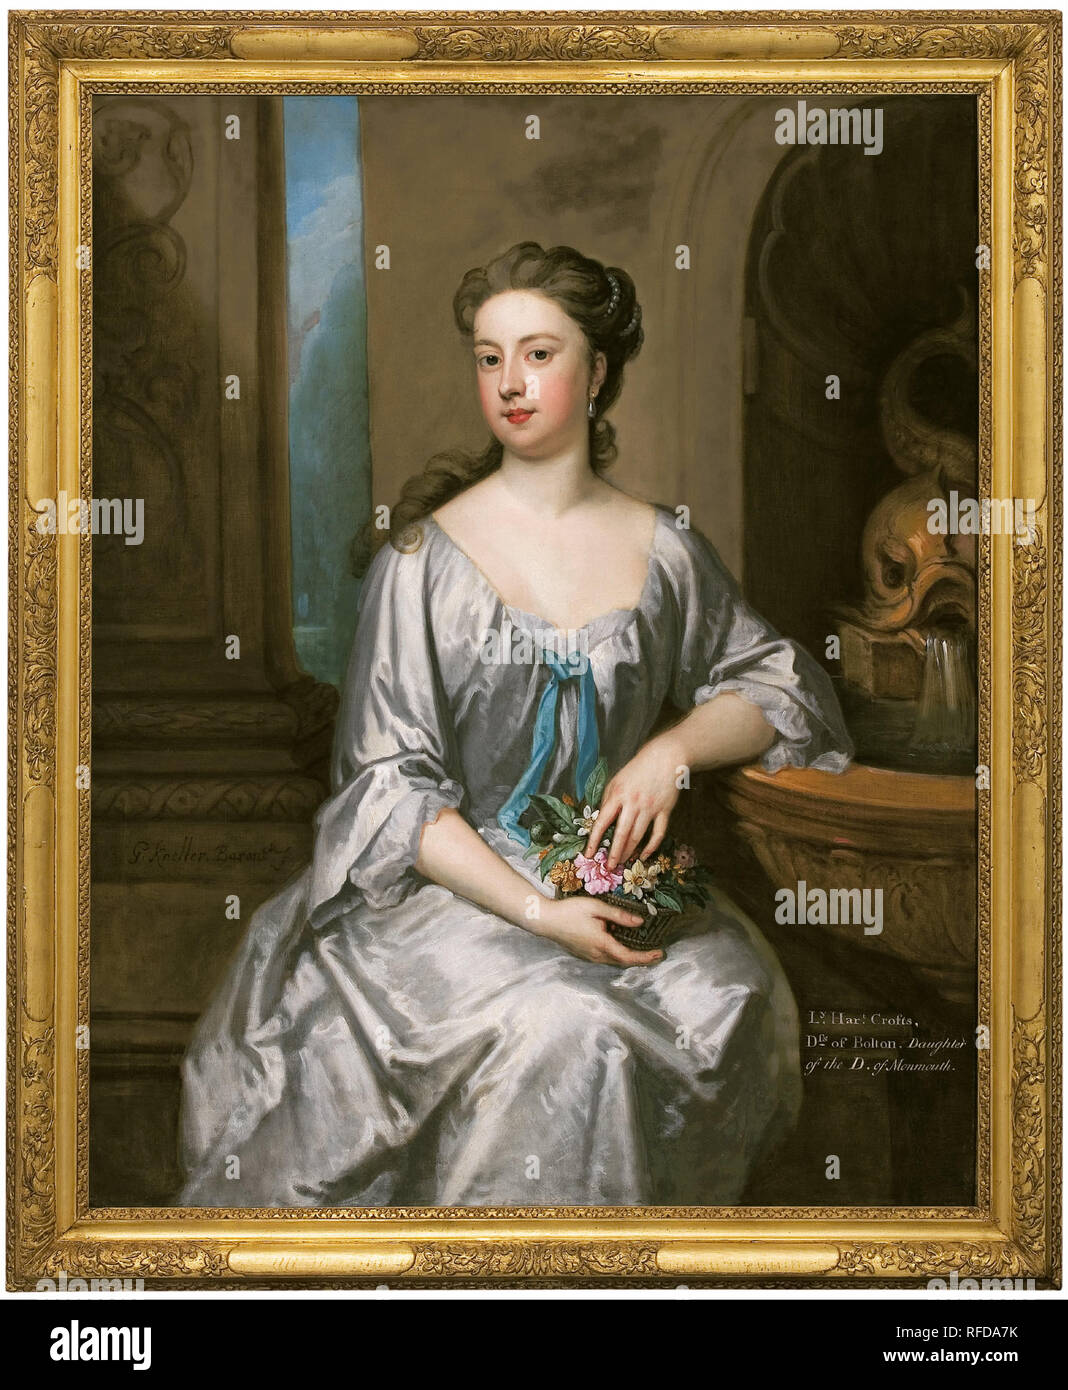 Lady Henrietta Crofts, Herzogin von Bolton. Datum/Zeit: Ca. 1715. Malerei. Öl auf Leinwand. Höhe: 127 mm (5 in); Breite: 102 mm (4.01 in). Autor: Godfrey Kneller. Stockfoto